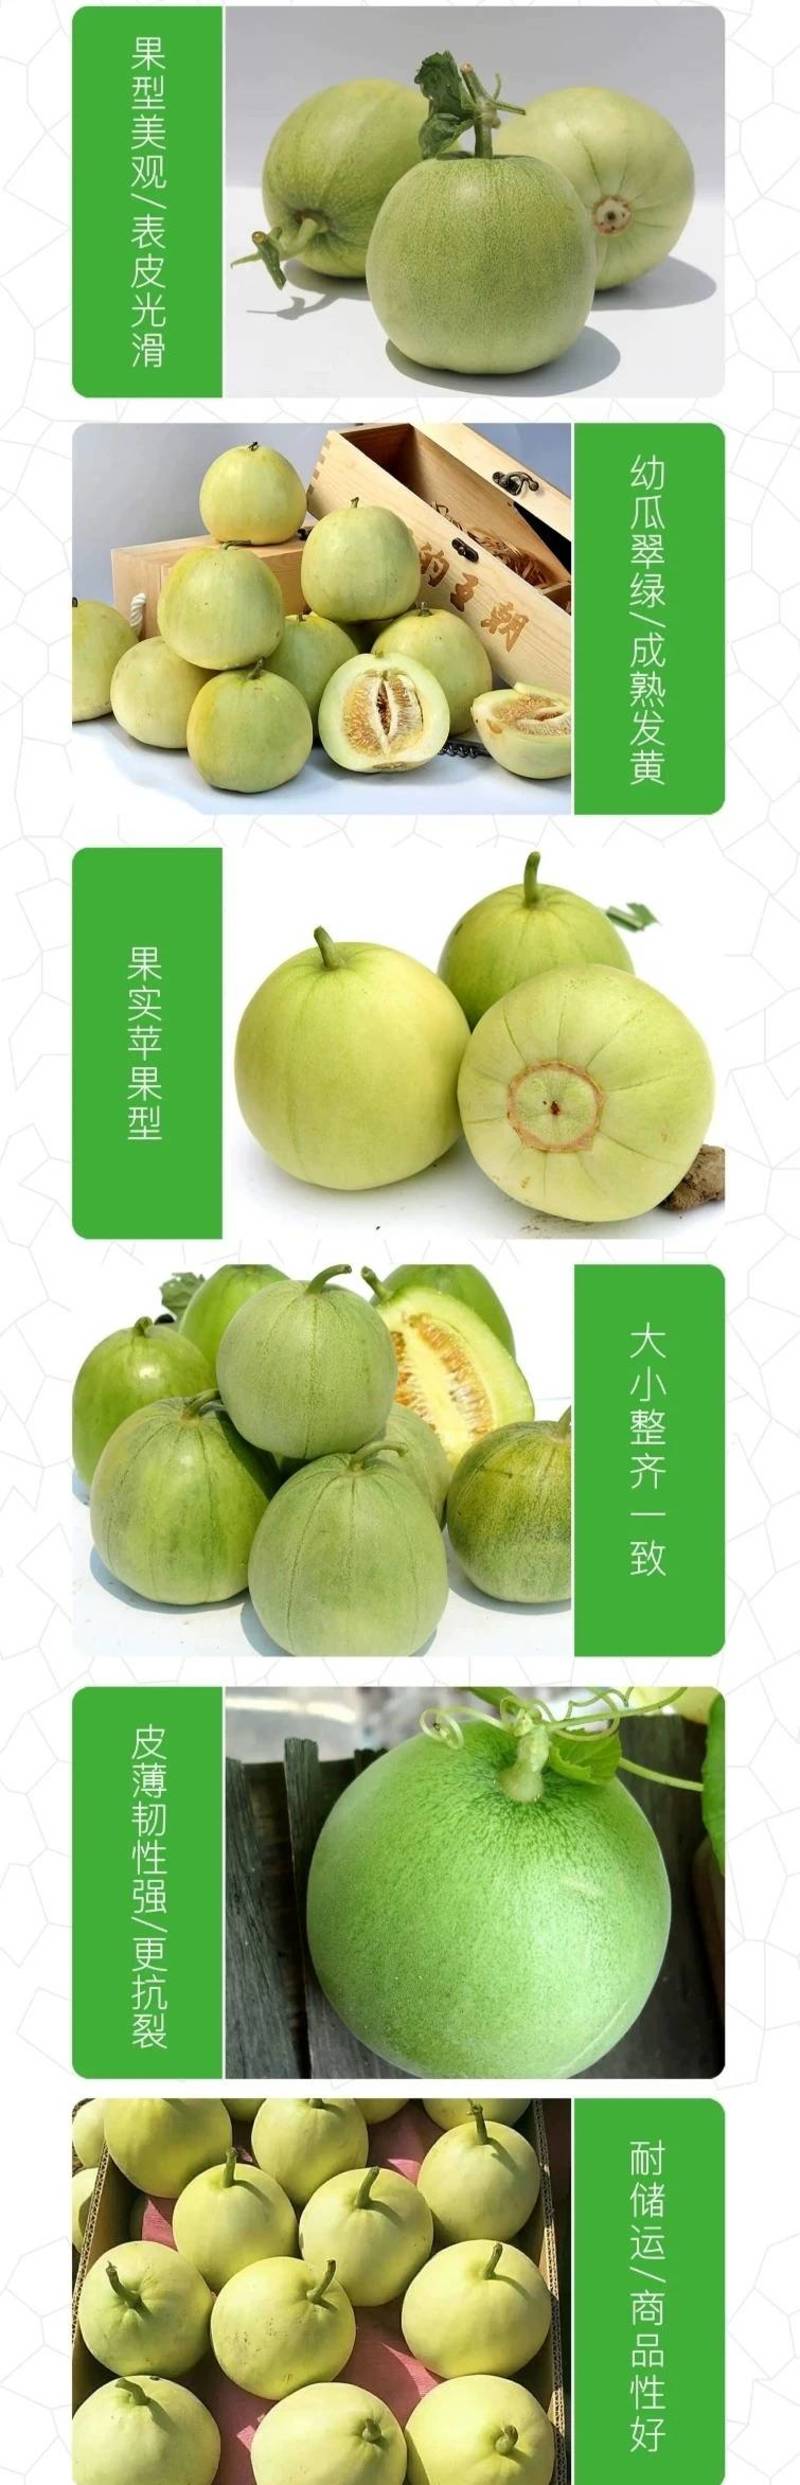 南佳甜瓜种子高端日本进口甜宝甜瓜种子黄绿皮，薄皮好吃